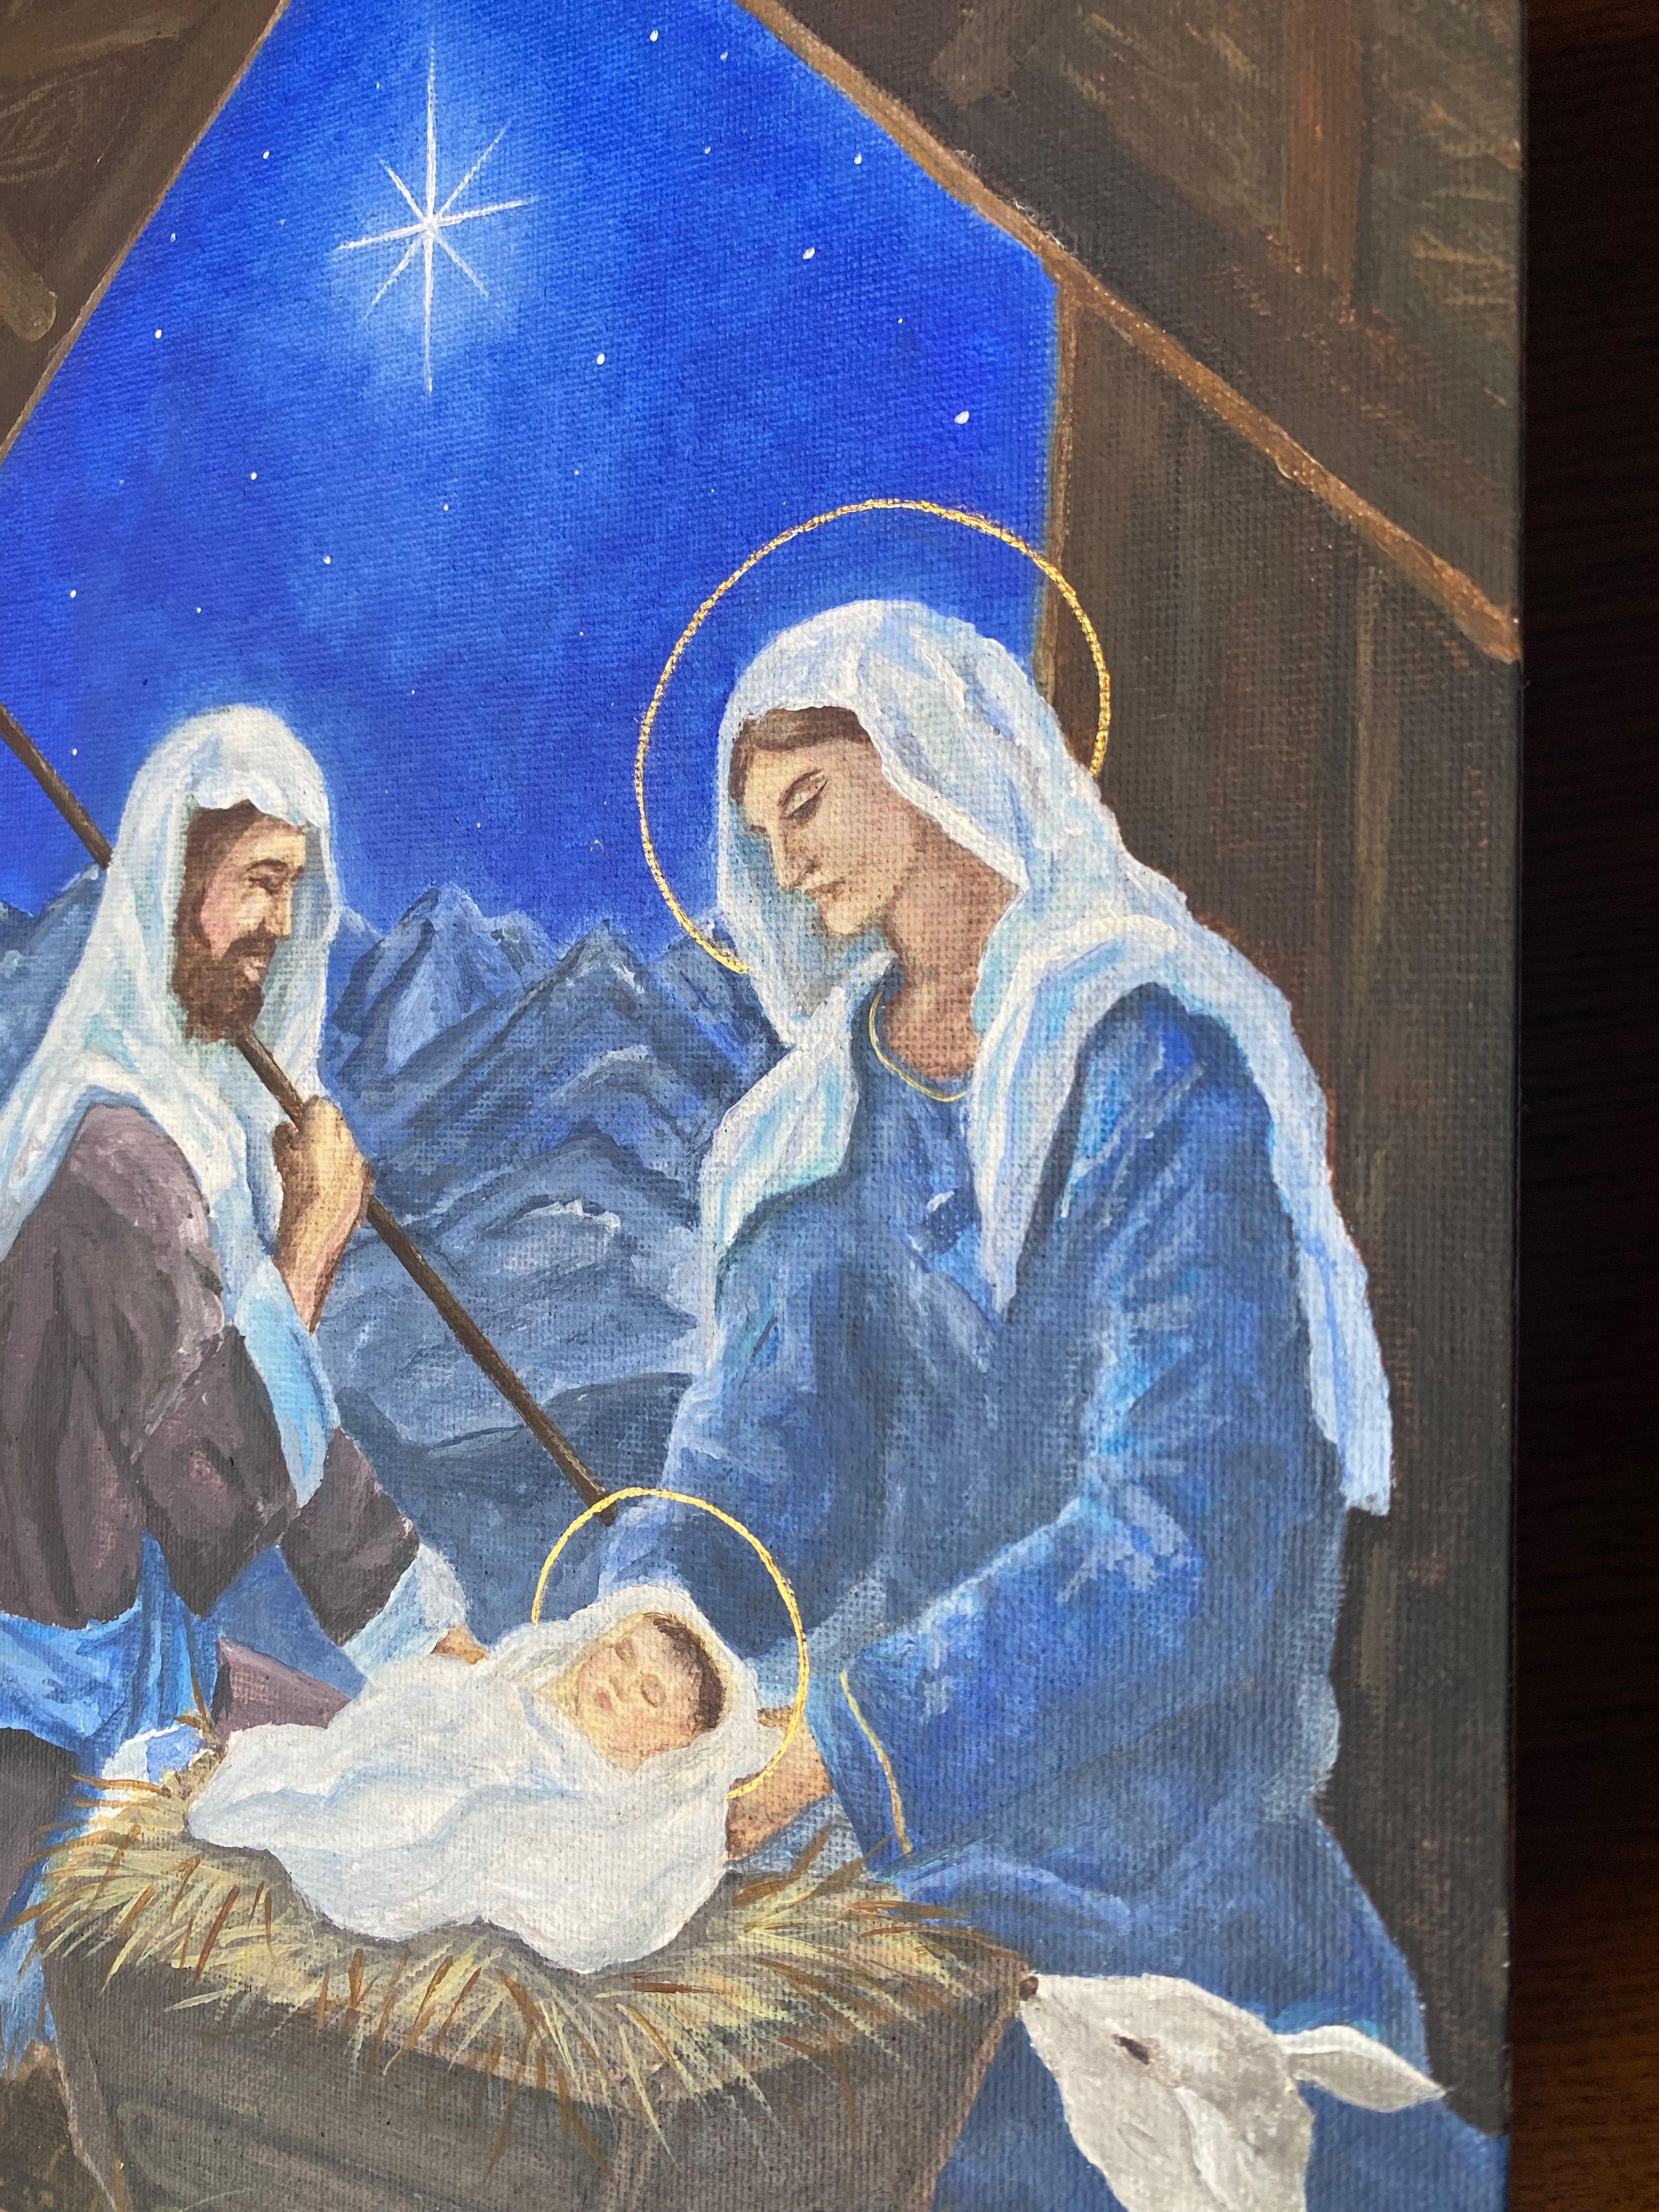 Ręcznie wykonany obraz przedstawiający narodziny Jezusa